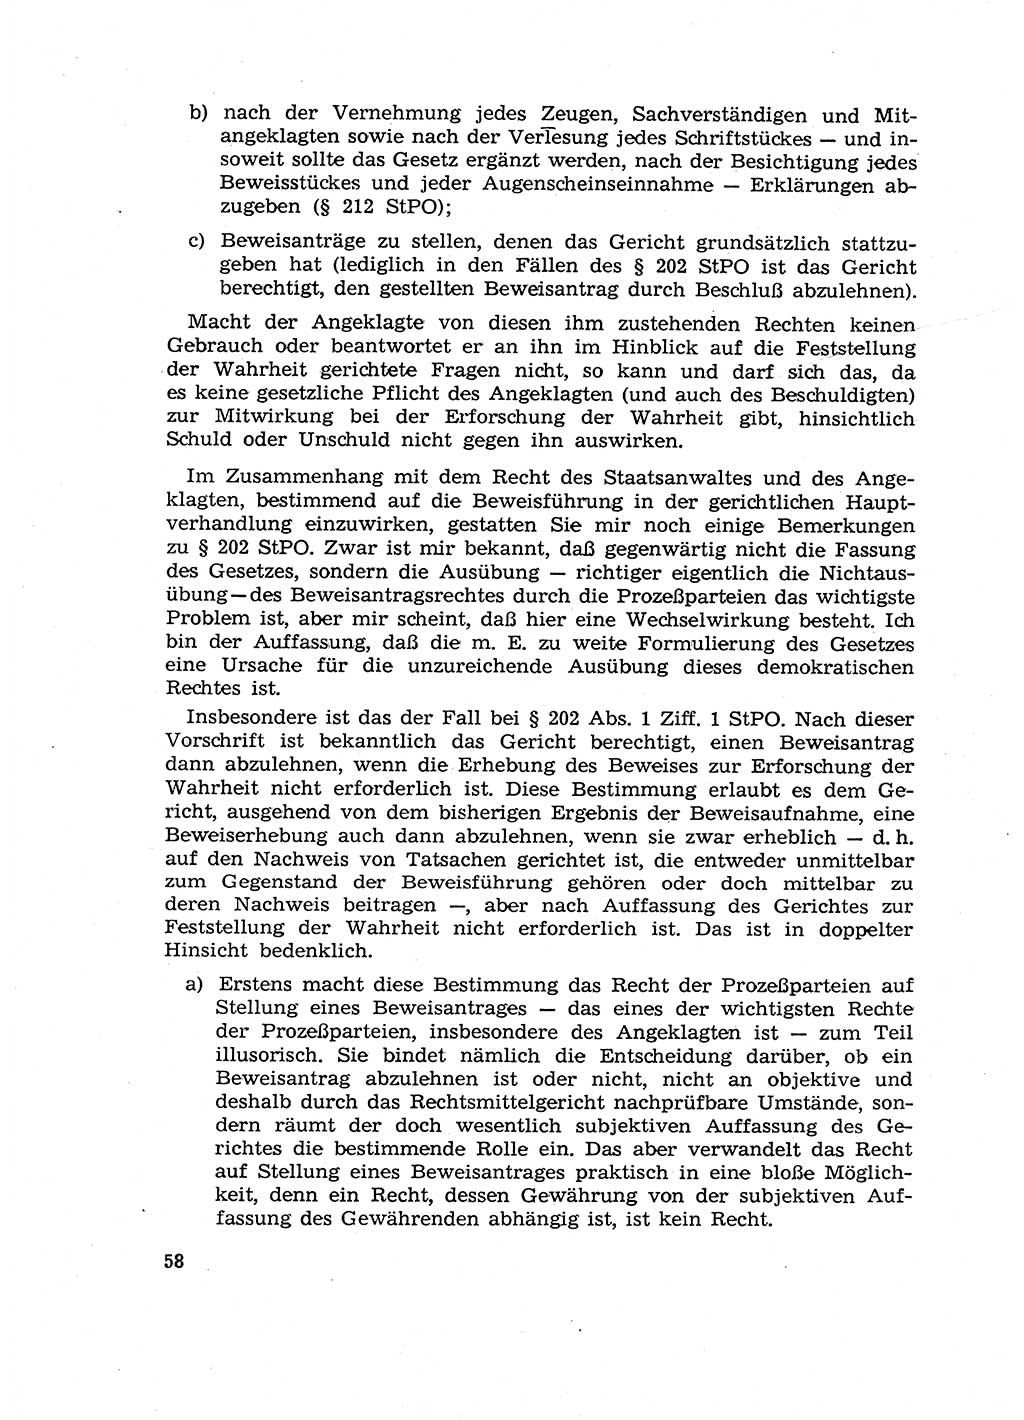 Fragen des Beweisrechts im Strafprozess [Deutsche Demokratische Republik (DDR)] 1956, Seite 58 (Fr. BeweisR. Str.-Proz. DDR 1956, S. 58)